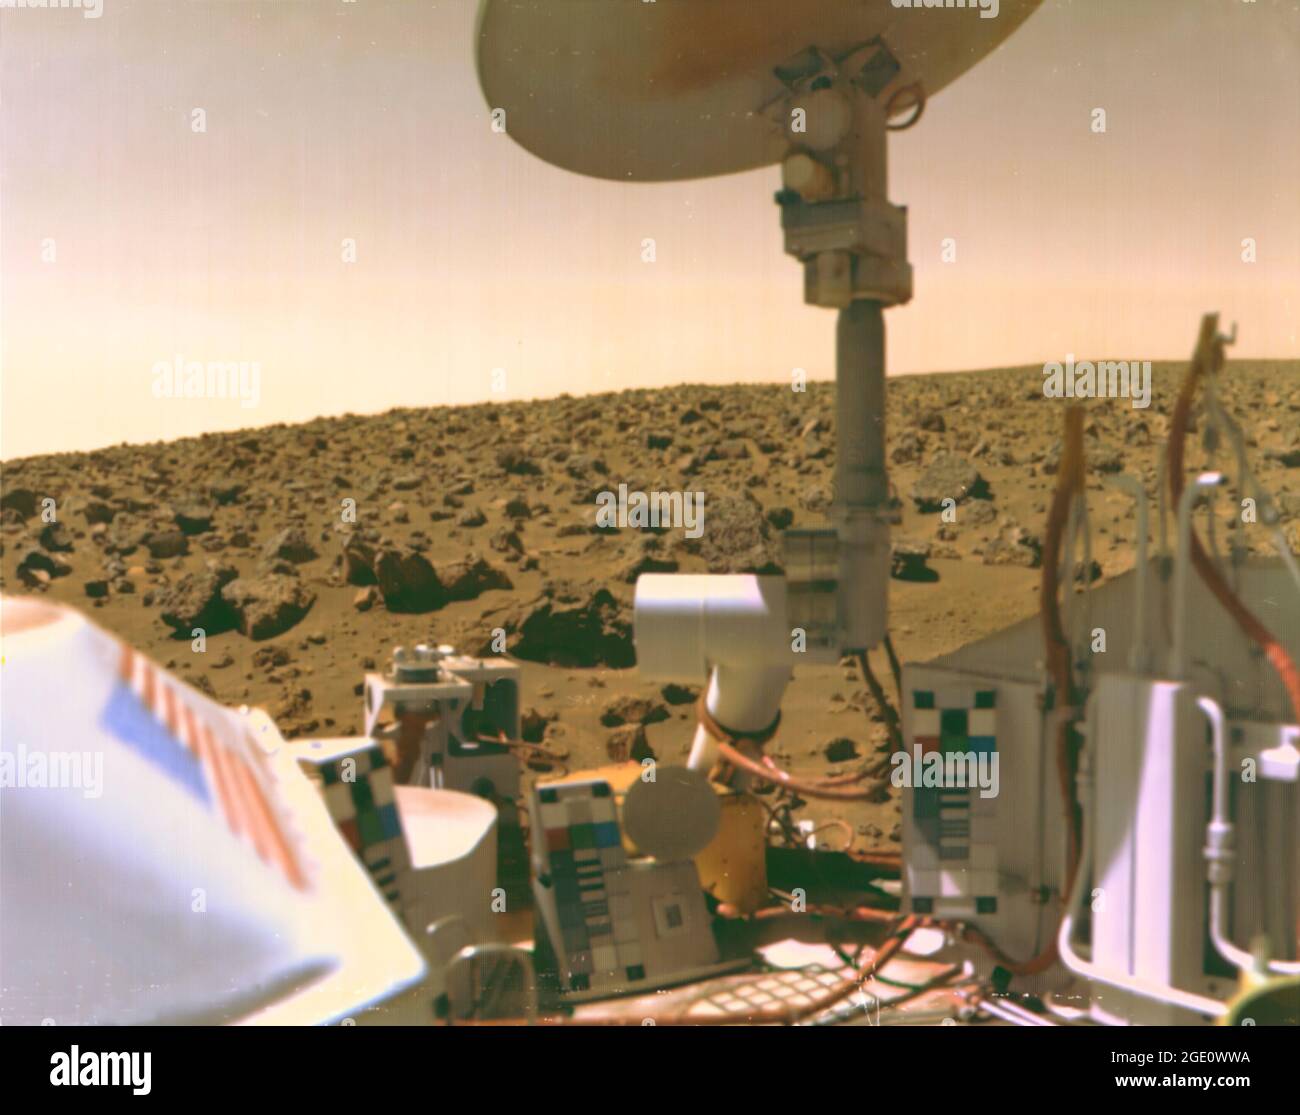 Viking 2 Bild der Mars-Utopien-Ebene Beschreibung: Das mit Steinen übersäte Feld aus roten Felsen reicht bis zum Horizont, fast zwei Meilen von Viking 2 auf der Mars-Utopien-Ebene entfernt. Wissenschaftler glauben, dass die Farben der Marsoberfläche und des Himmels auf diesem Foto ihre wahren Farben repräsentieren. Feine Partikel aus rotem Staub haben sich auf den Oberflächen der Raumfahrzeuge niedergelassen. Die Lachsfarbe des Himmels wird durch Staubpartikel verursacht, die in der Atmosphäre schweben. Die Farbkalibrierungstabellen für die Kameras sind an drei Stellen auf dem Raumschiff montiert. Beachten Sie das blaue Sternfeld und die roten Streifen der Flagge. Stockfoto